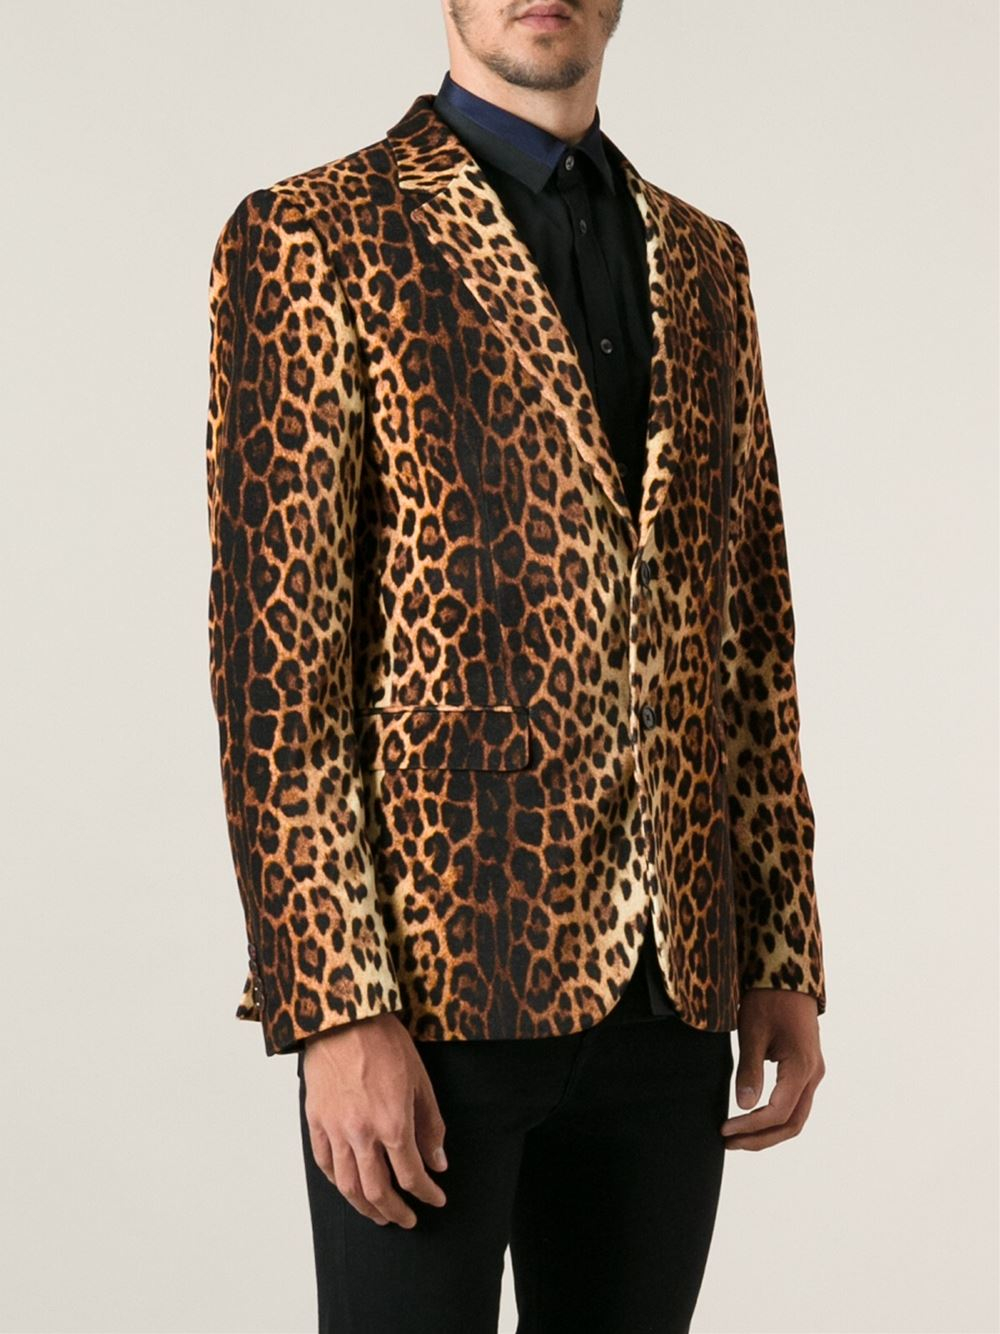 Lyst - Moschino Leopard Print Blazer for Men